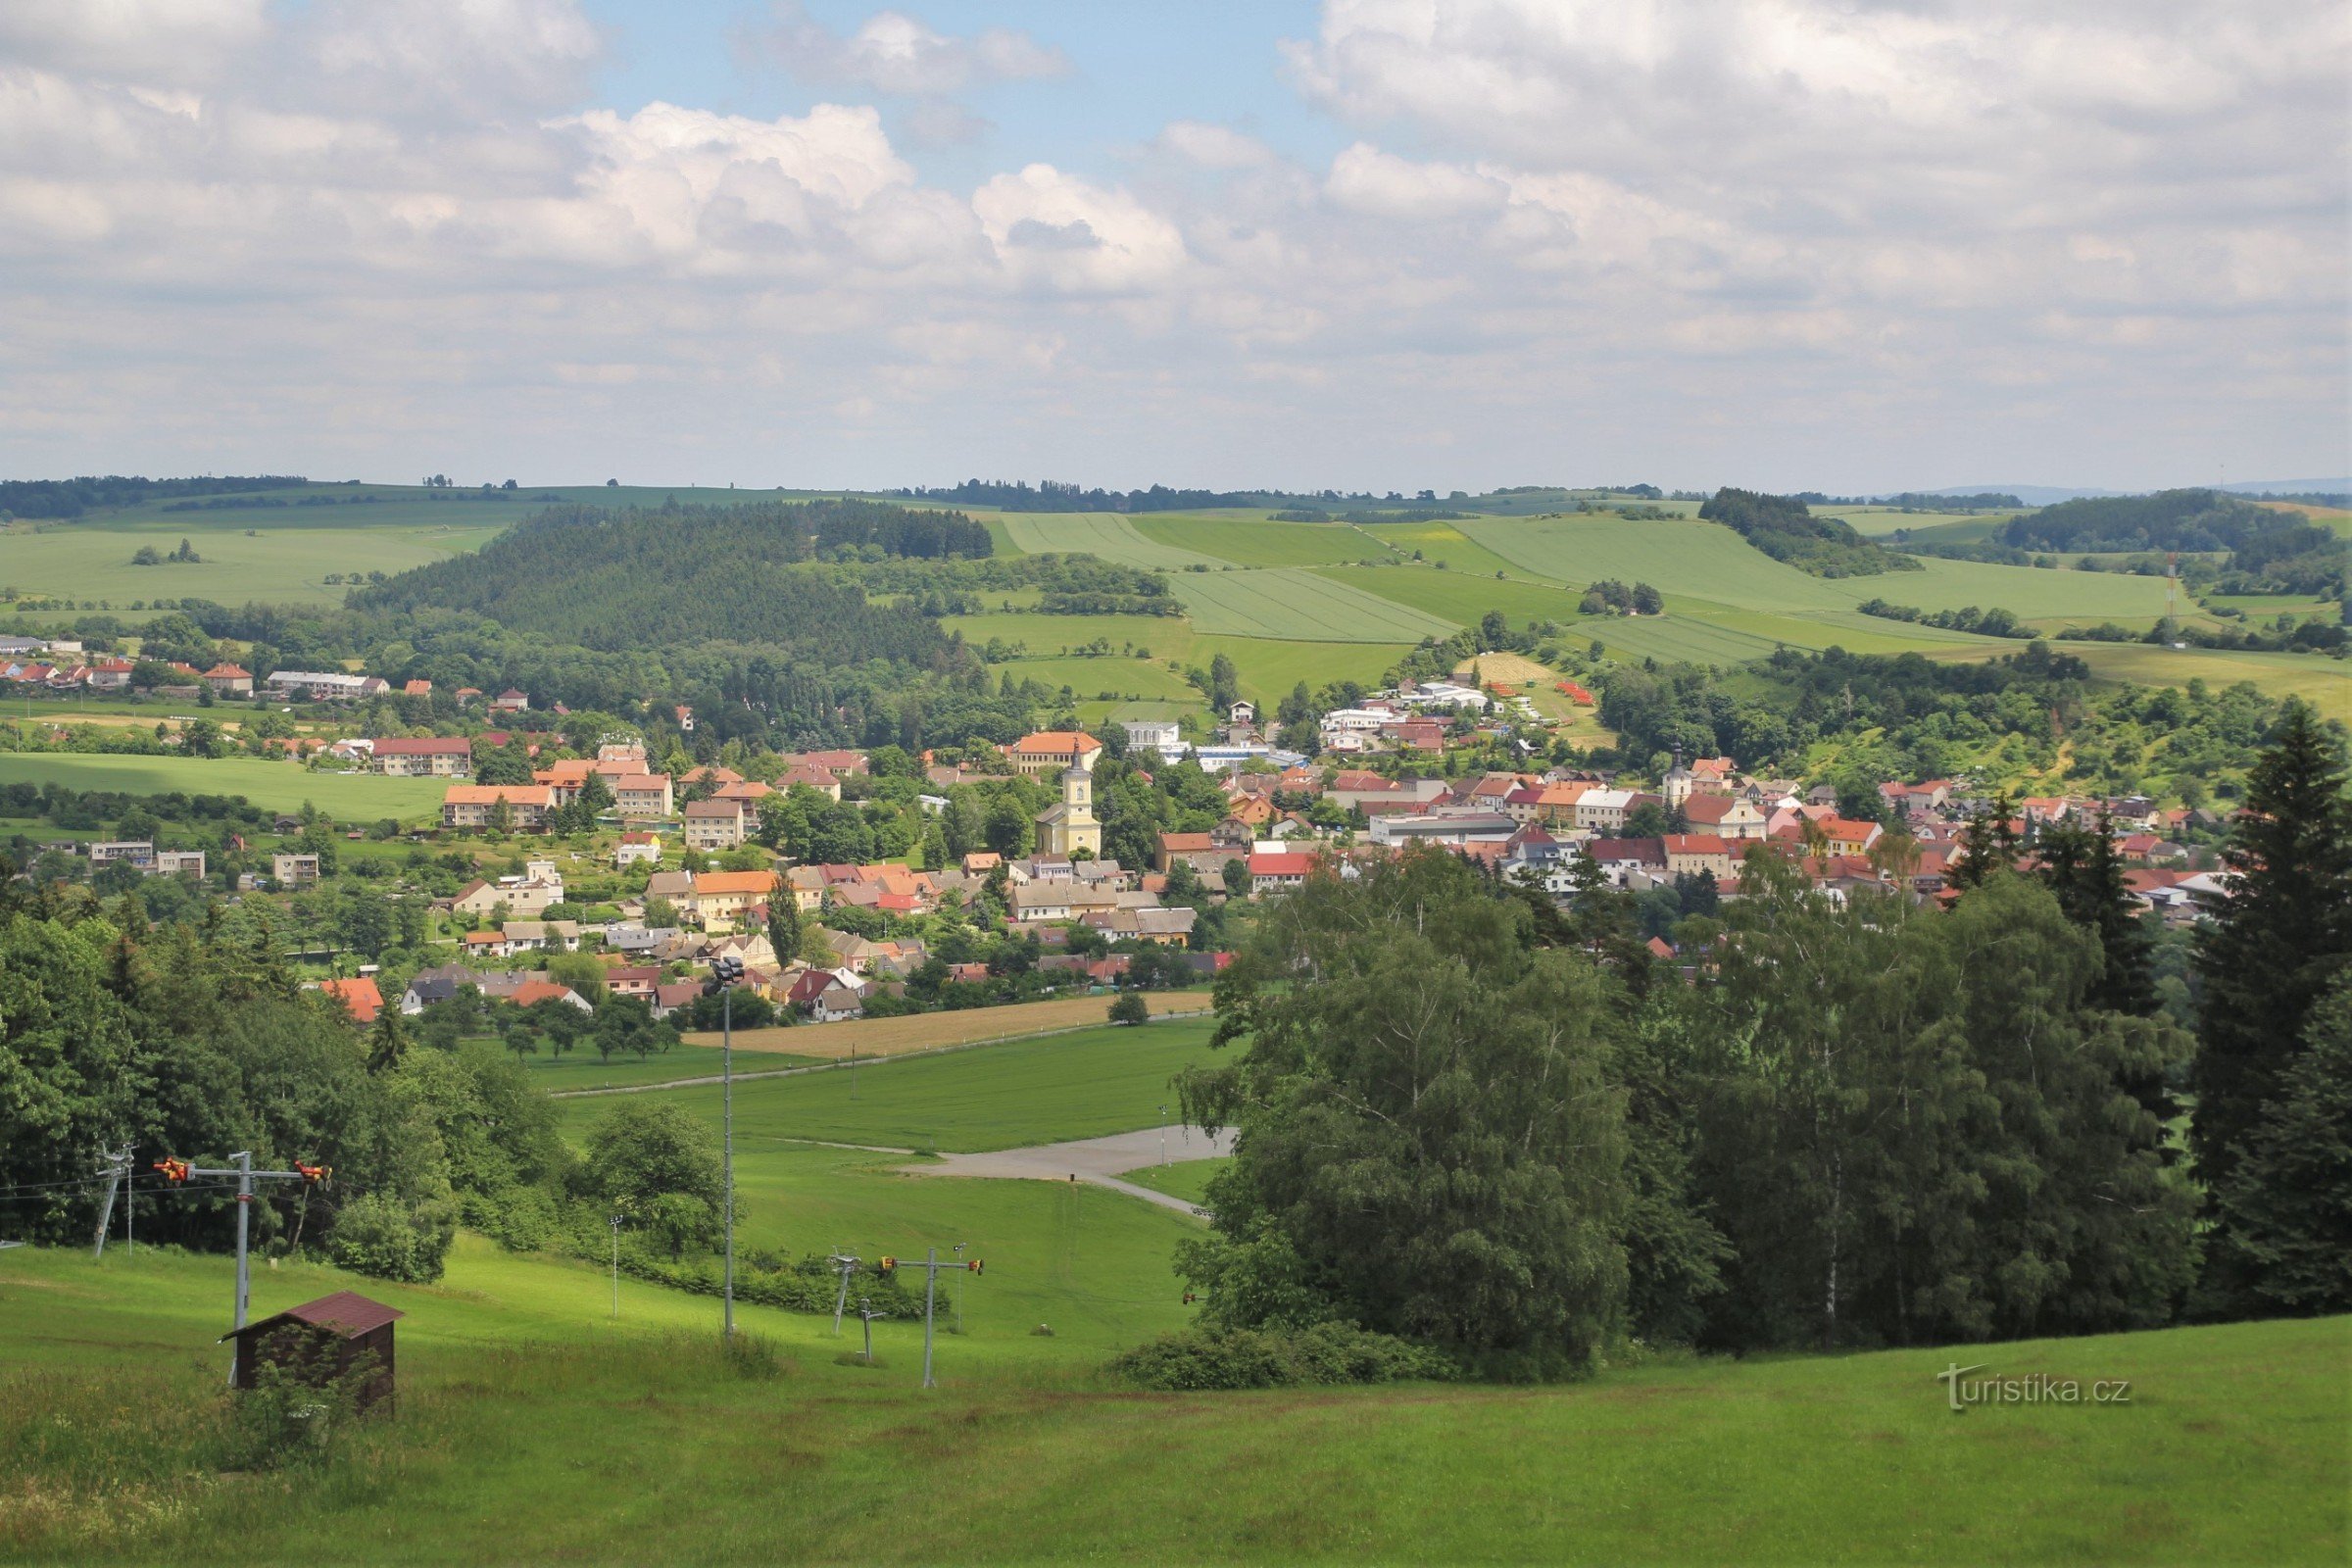 Widok na miasto Olešnice z wieży widokowej